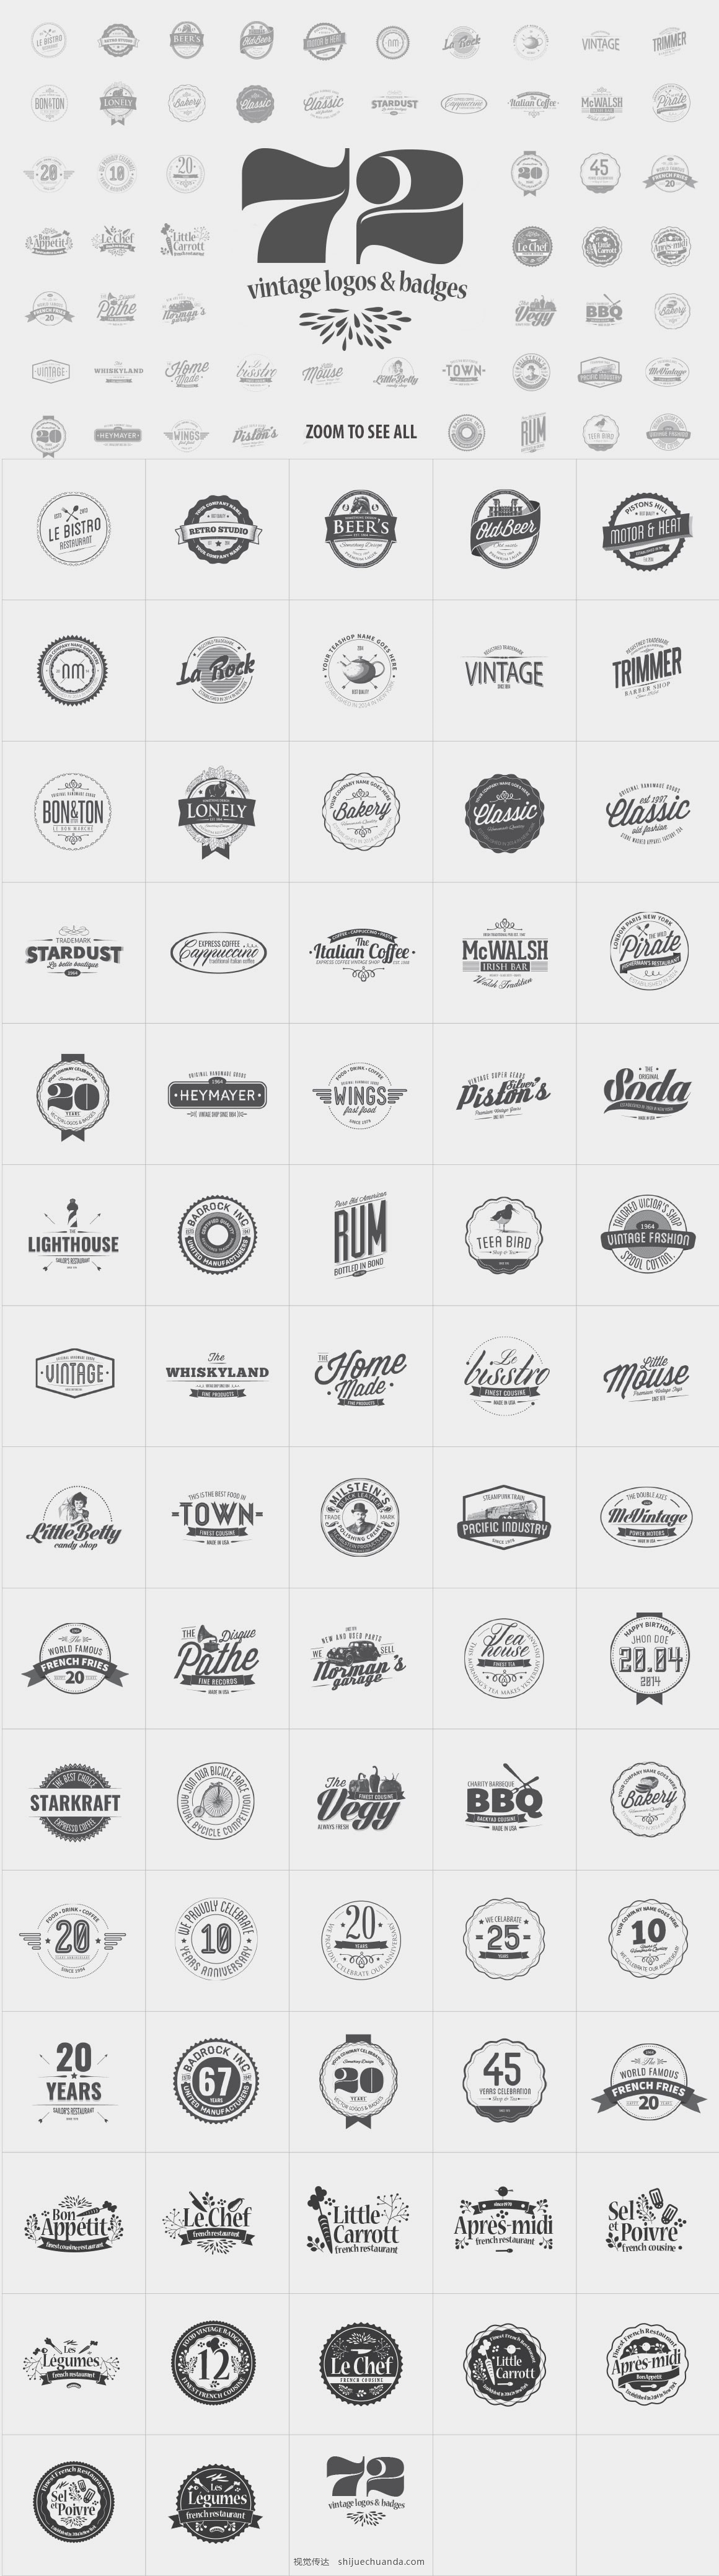 72 Vintage Logos & Badges-1.jpg